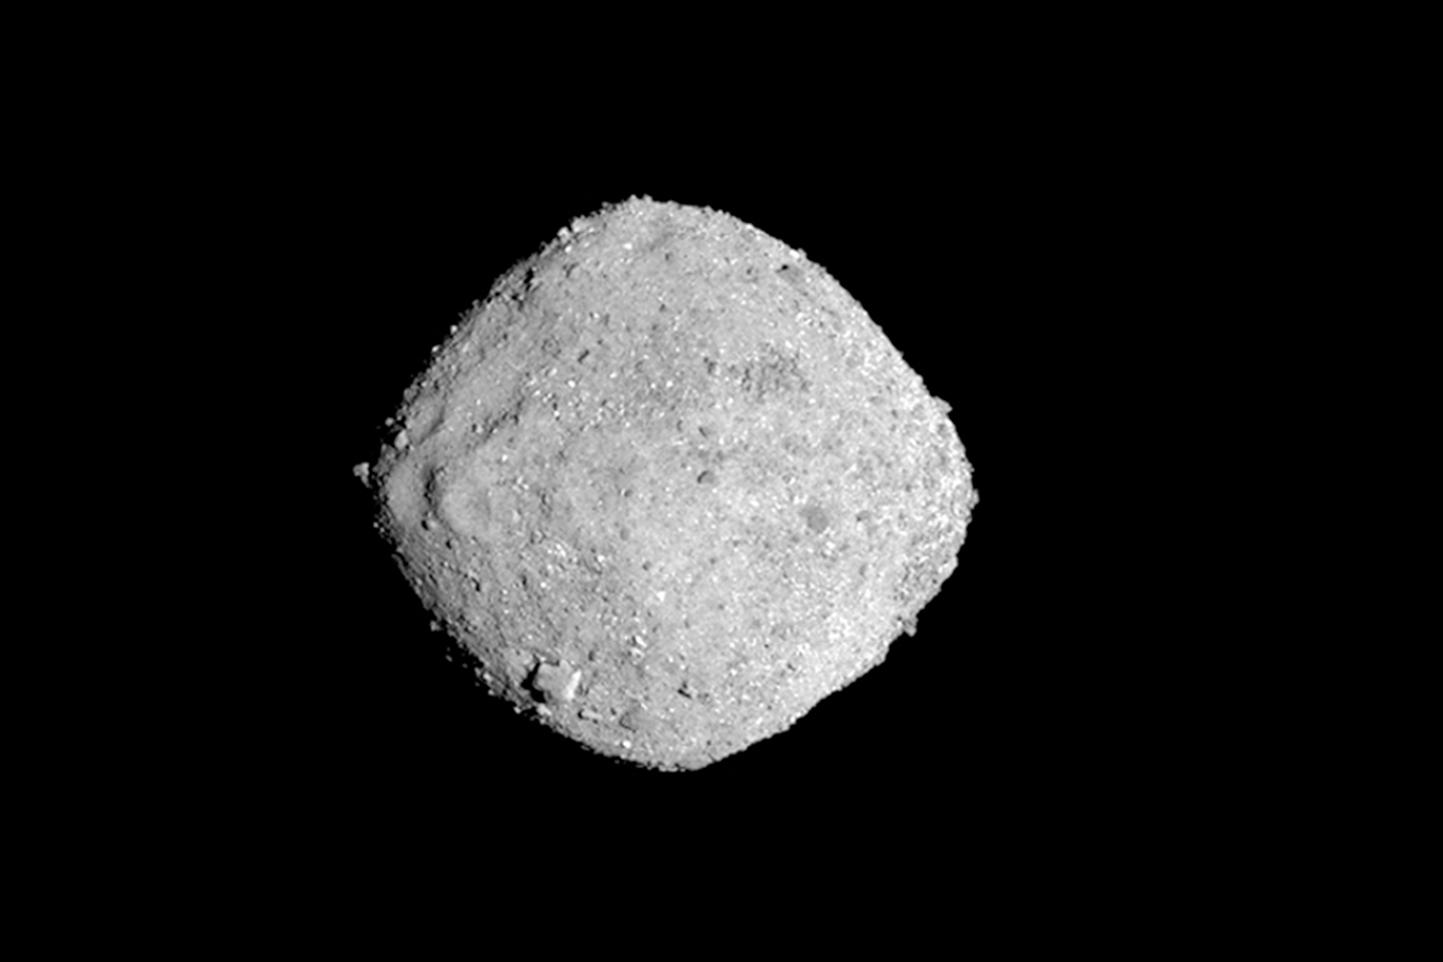 Asteroiden Bennu. Arkivbild.